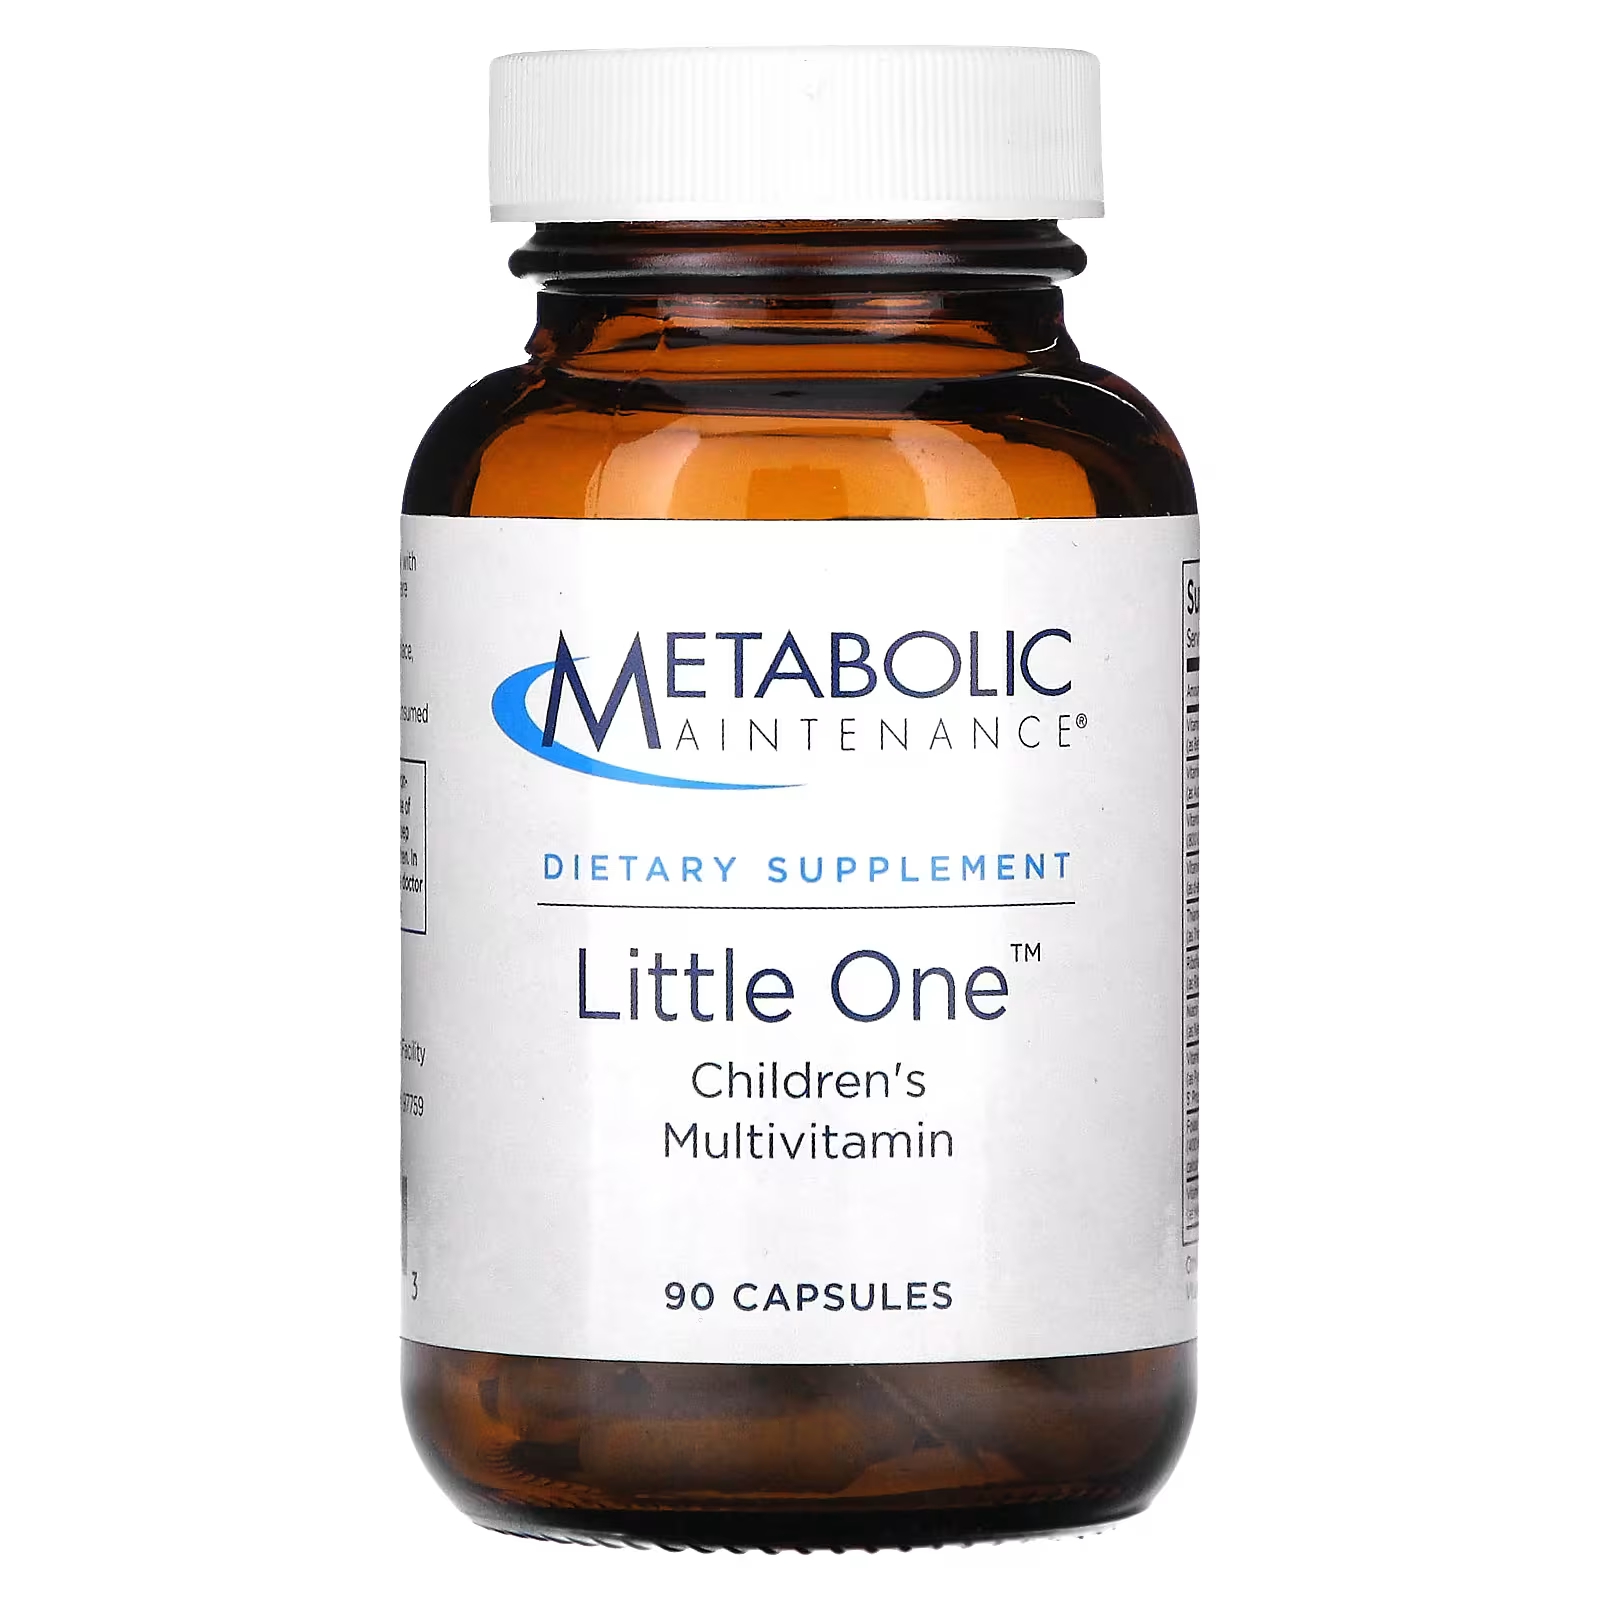 Мультивитамины детские Metabolic Maintenance Little One для поддержания метаболизма, 90 капсул